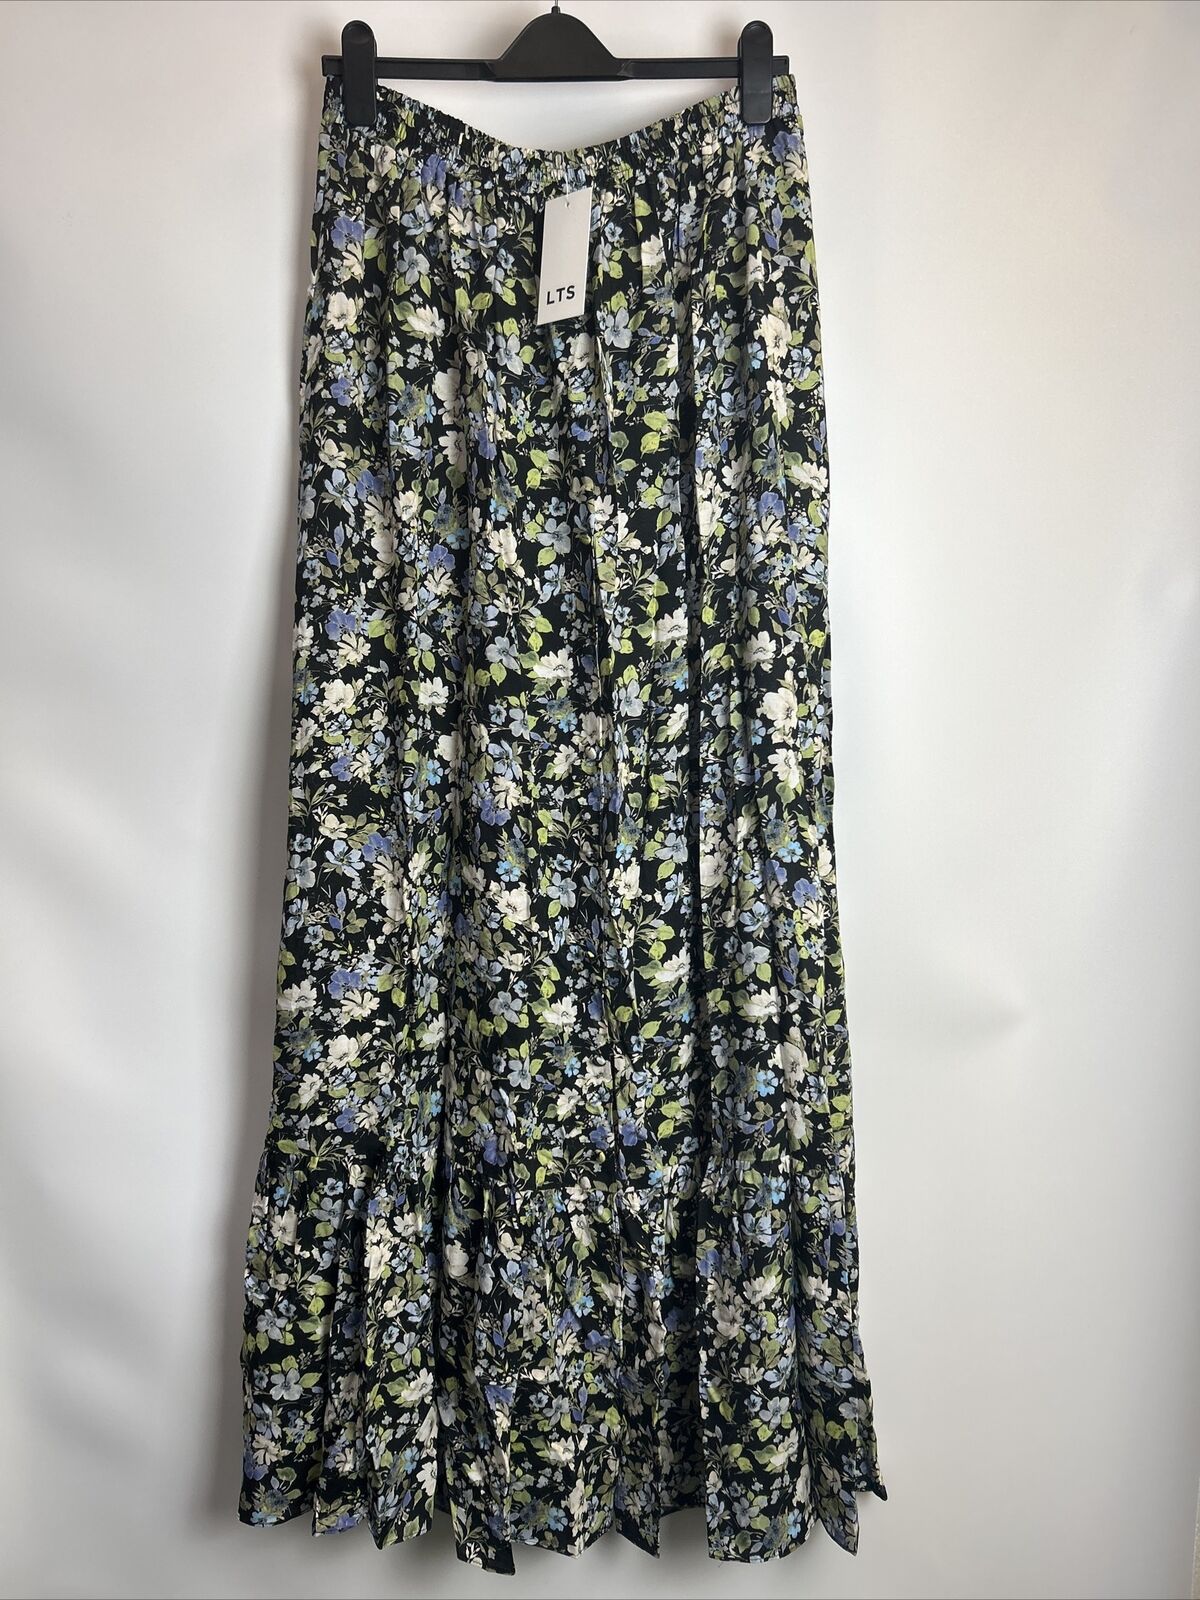 LTS Skirt - Black/Blue Floral. UK 16 **** Ref V342